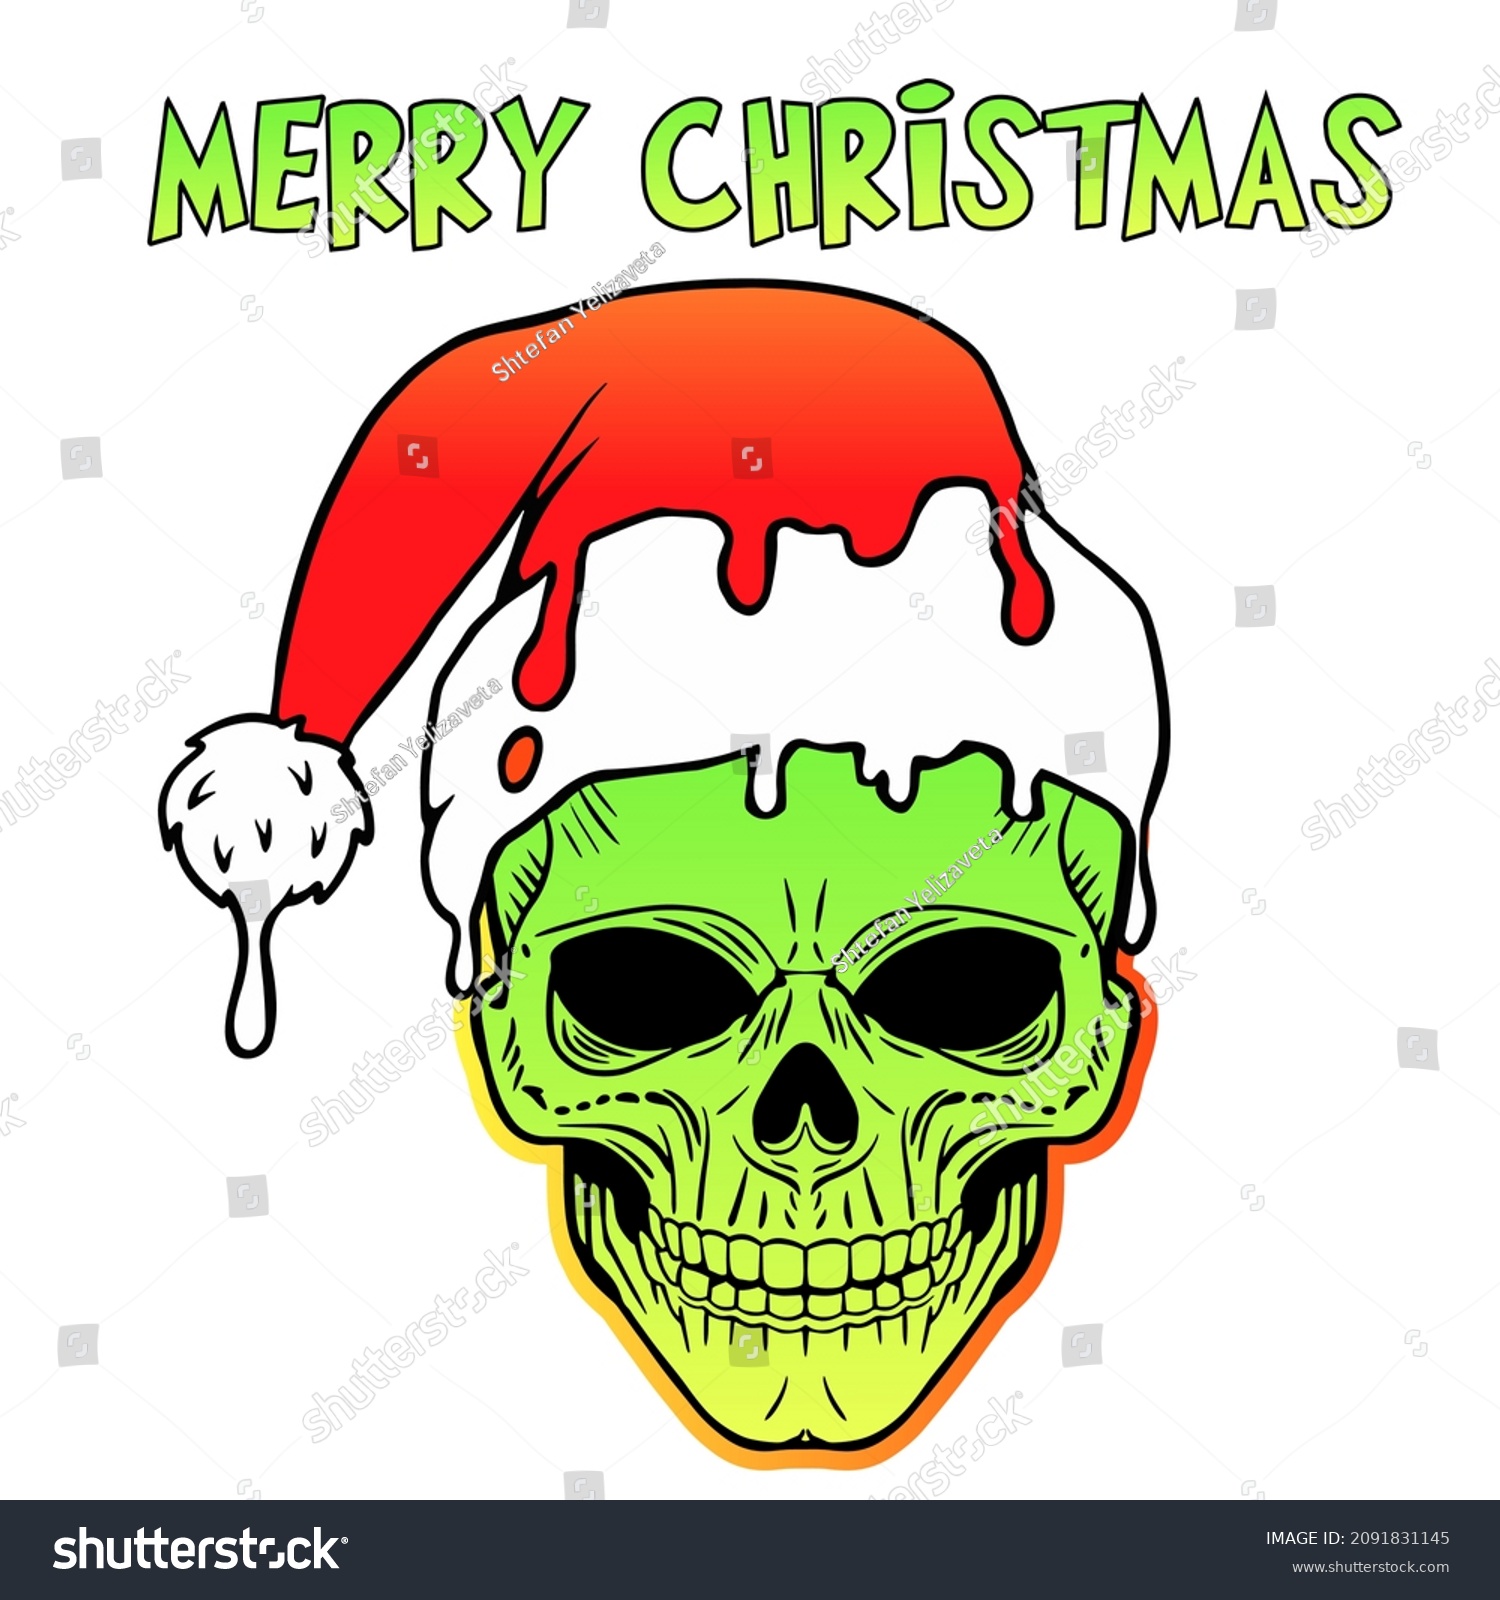 SVG of Vector Christmas skull illustration. Hand drawn skull in Santa hat. Inscription Merry Christmas. Print t shirt design. svg